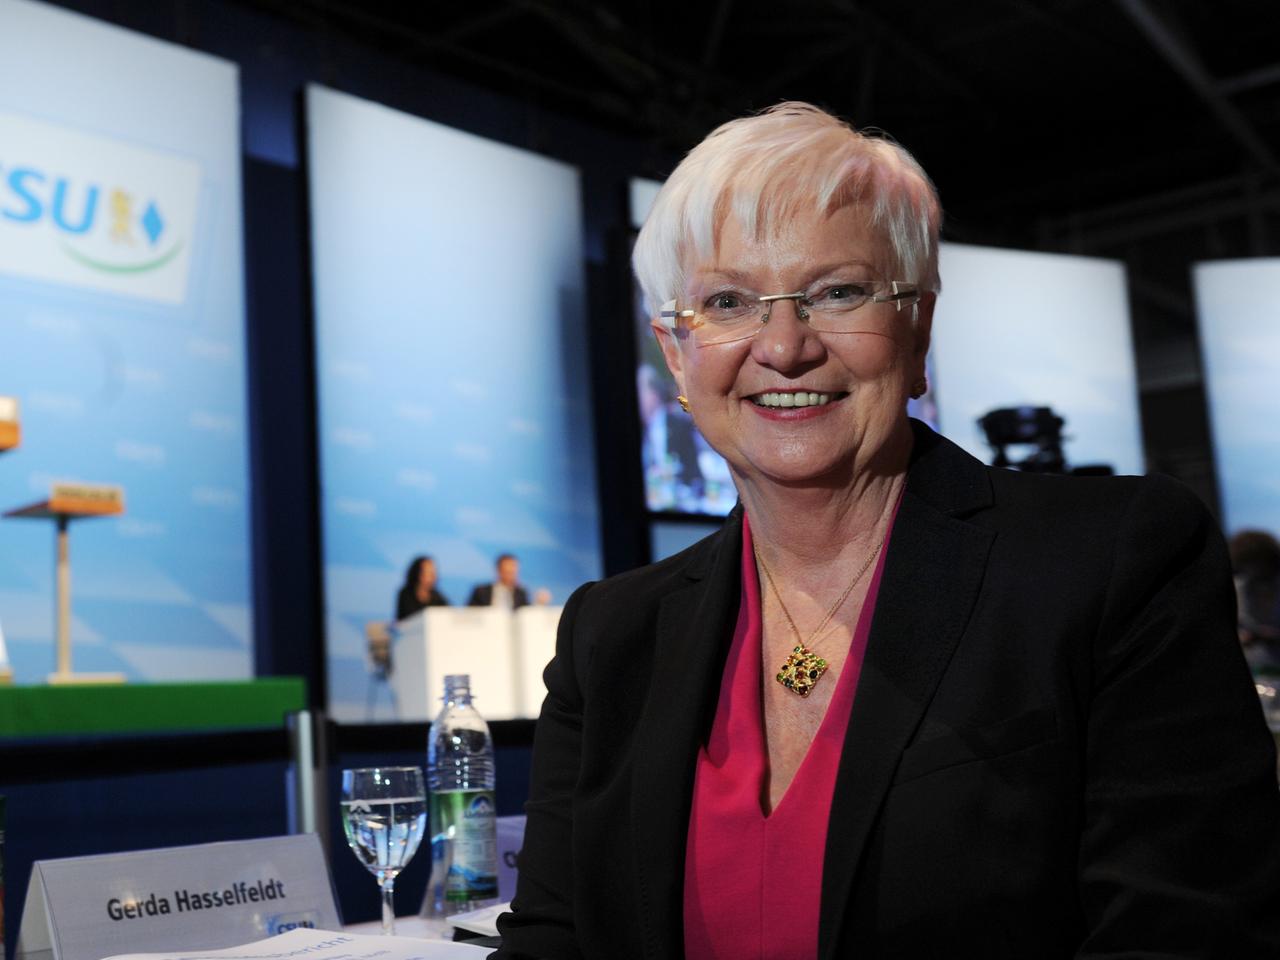 Gerda Hasselfeldt, die Vorsitzende der CSU-Landesgruppe